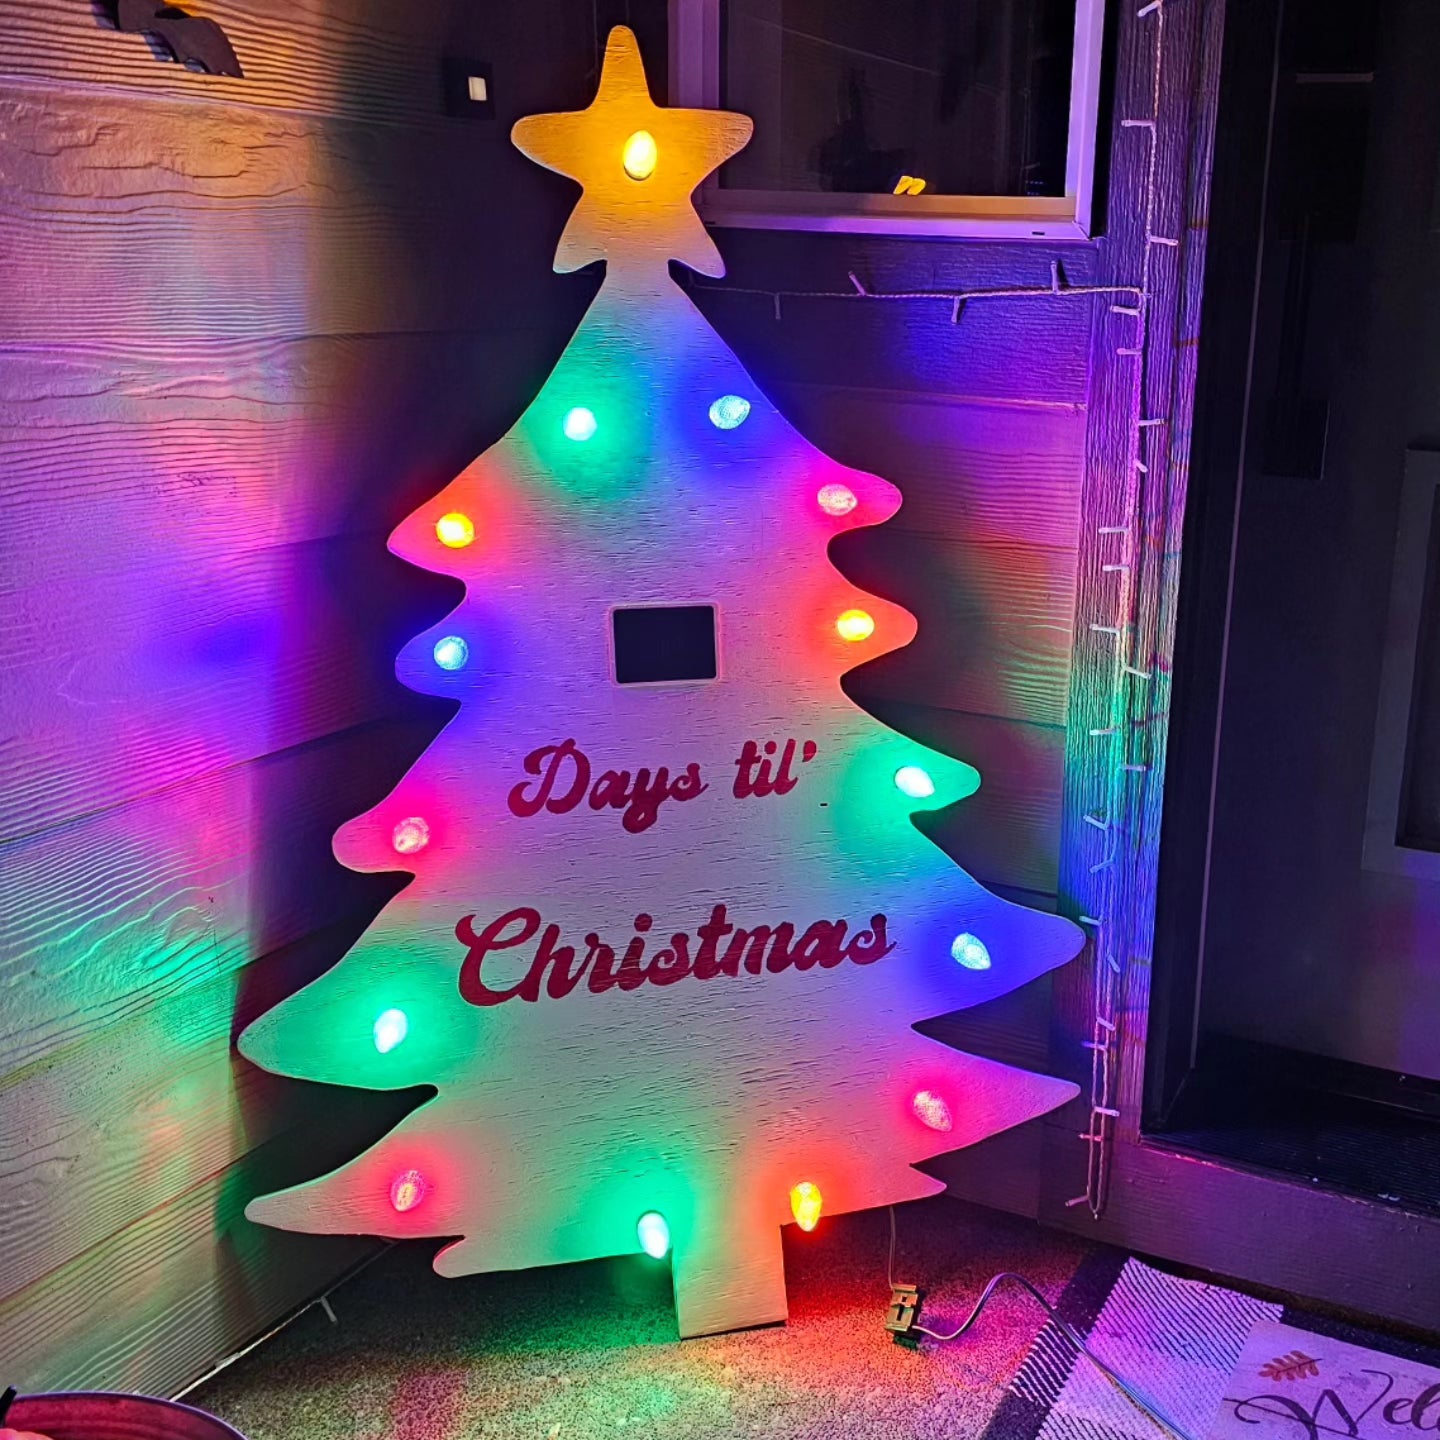 Lighted Days till Christmas tree